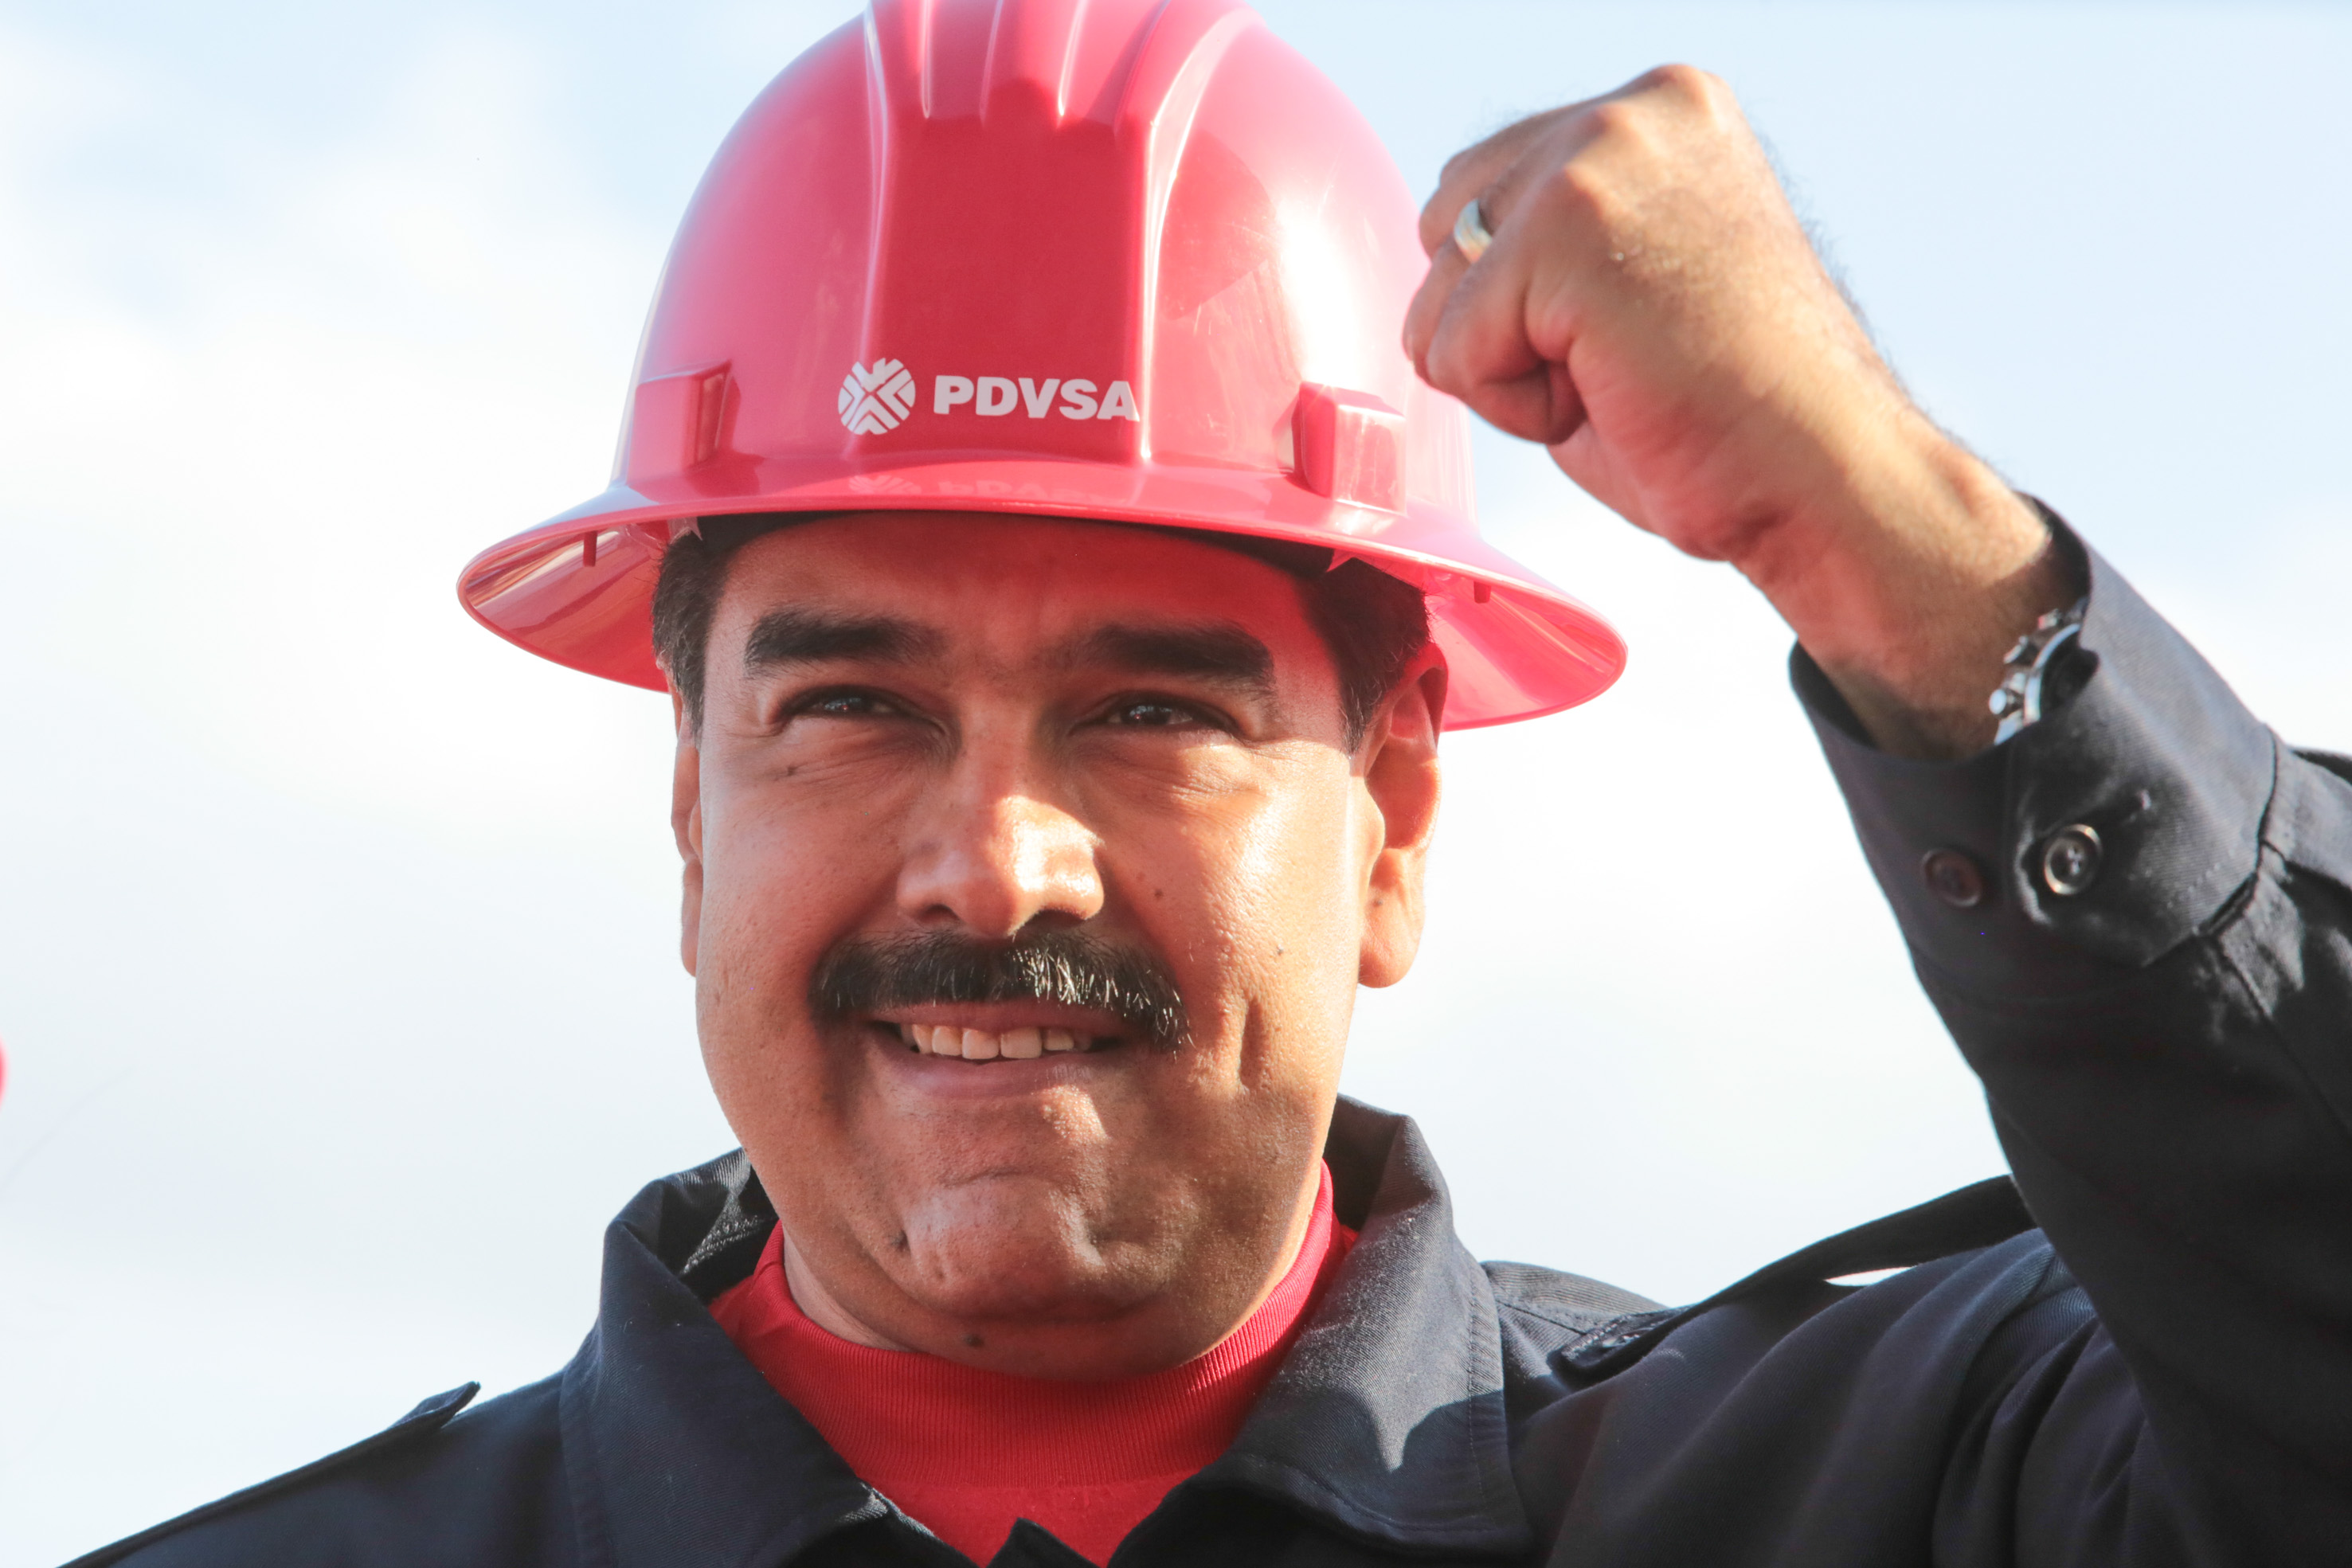 ¡Lleva pueblo Maduro! Hasta los empleados de Pdvsa participaron en la Consulta Popular (Foto)